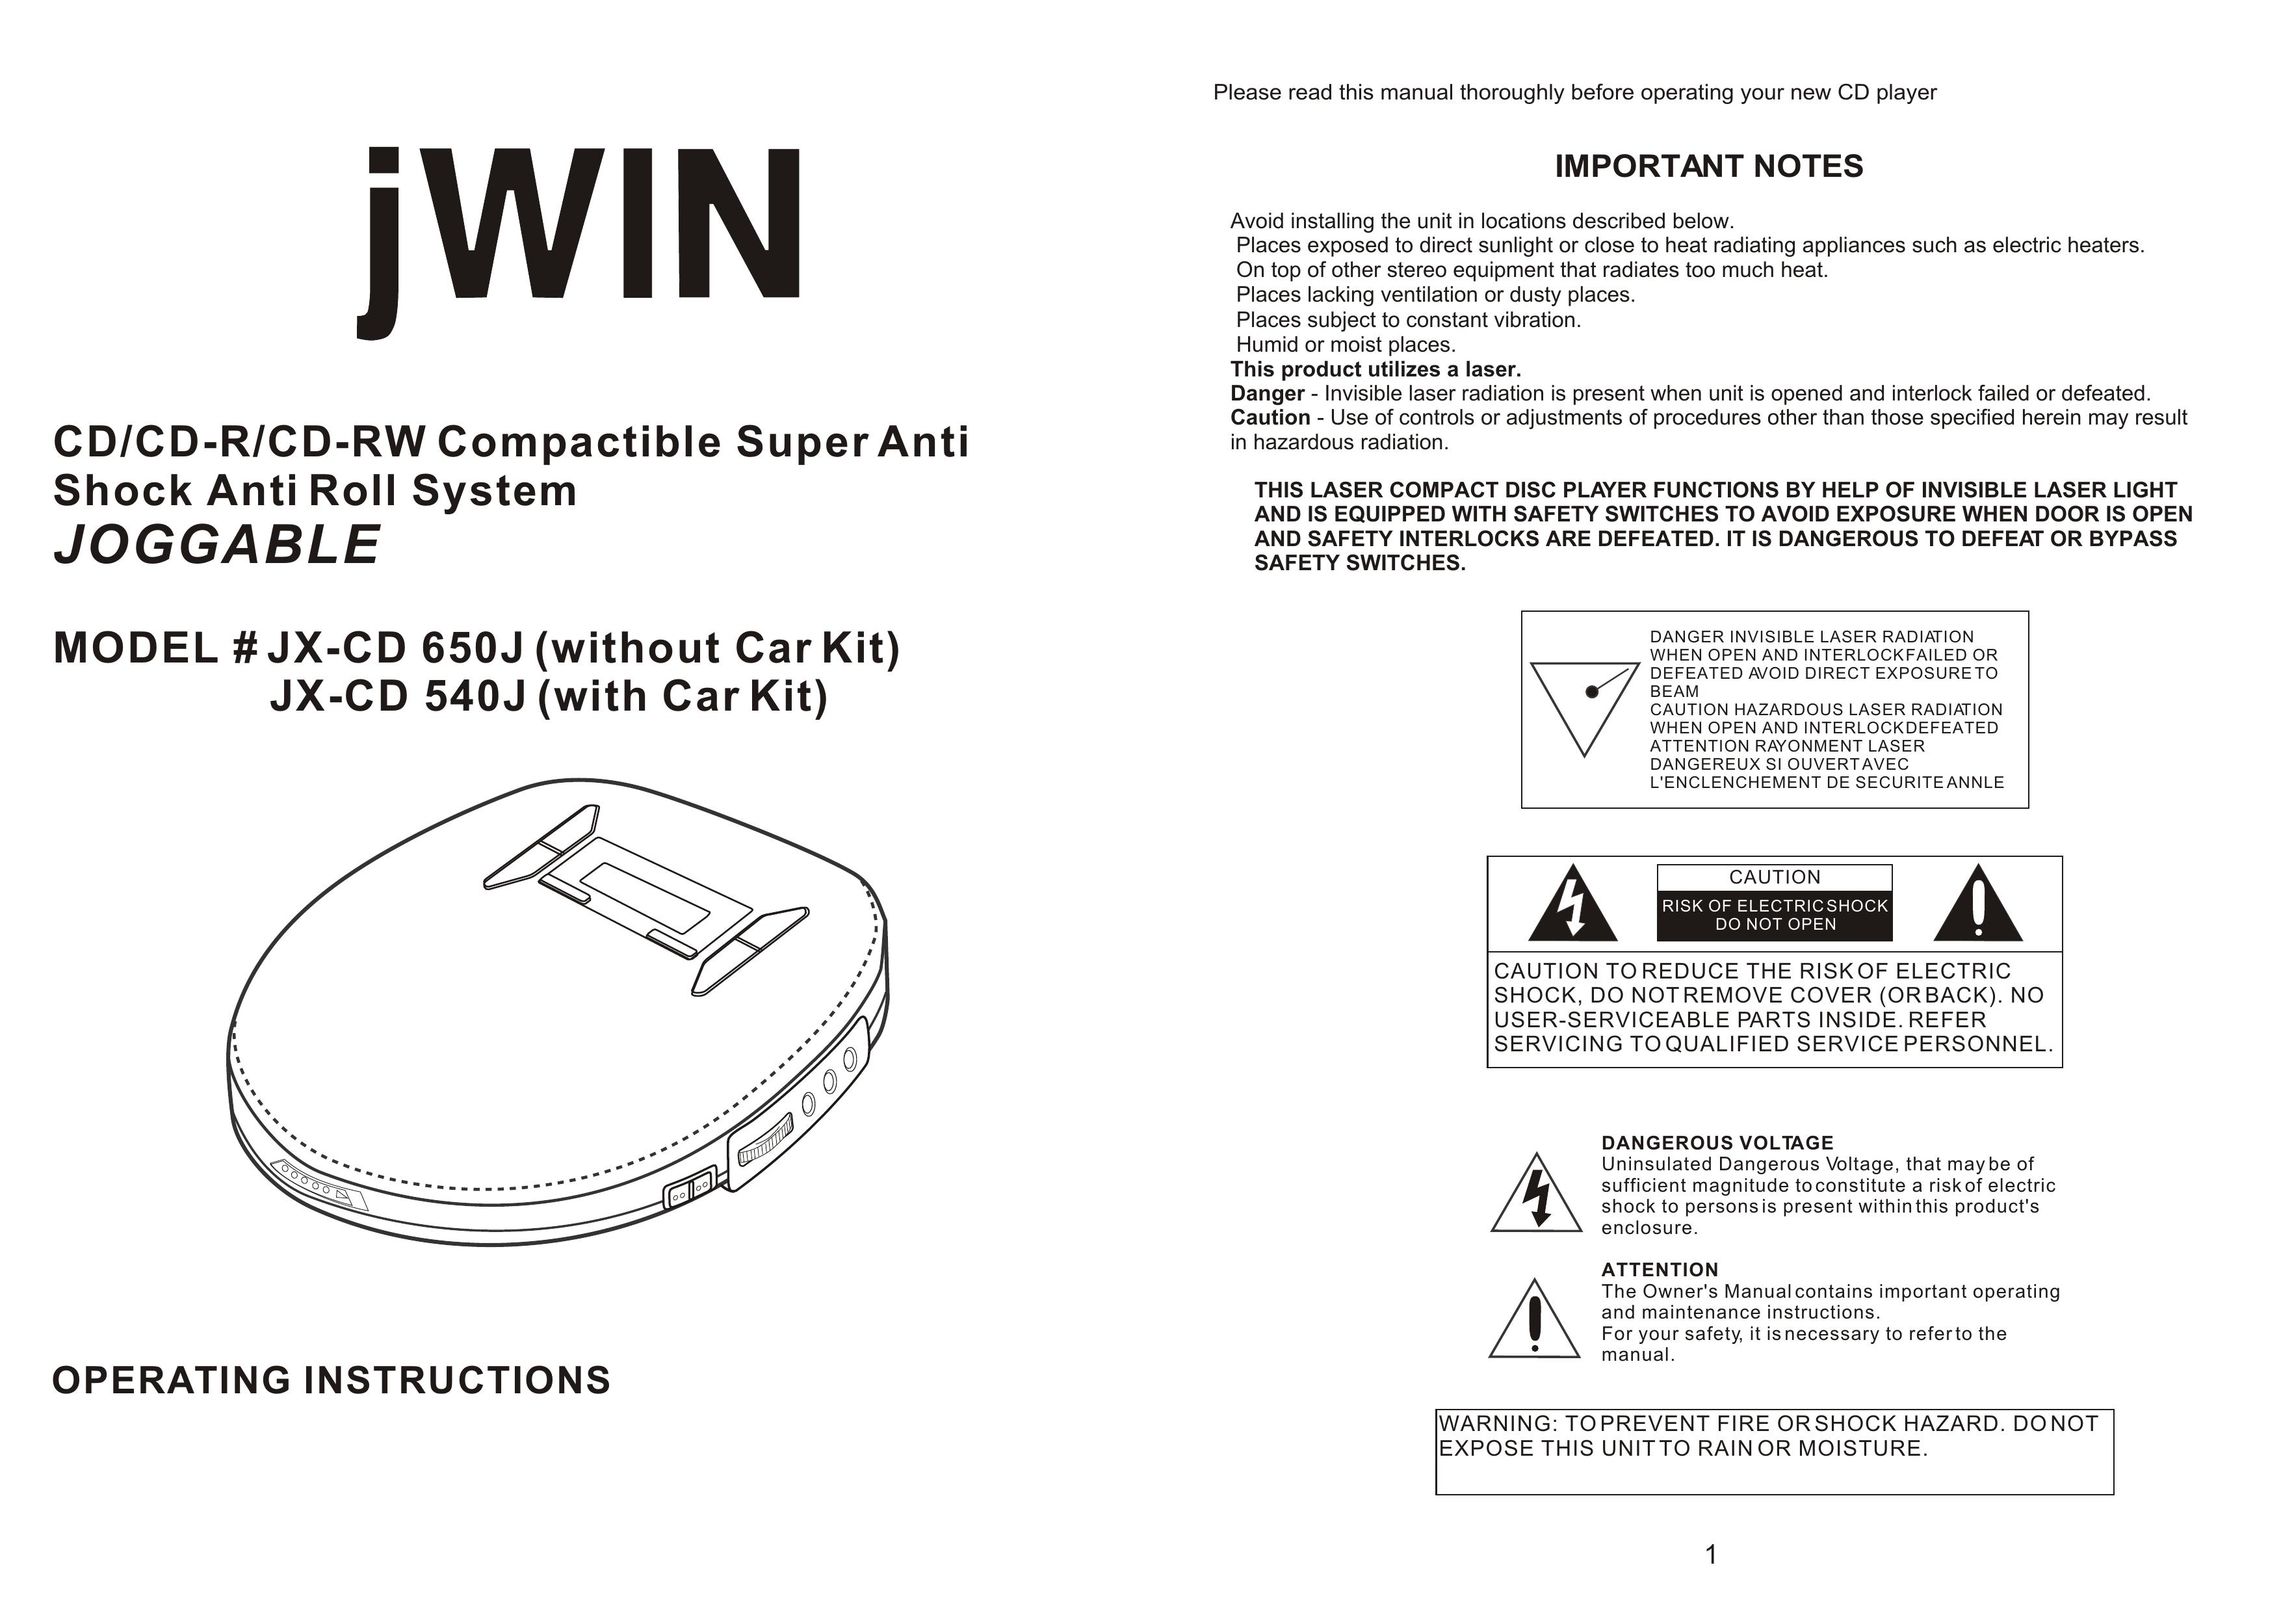 Jwin JX-CD 650J CD Player User Manual